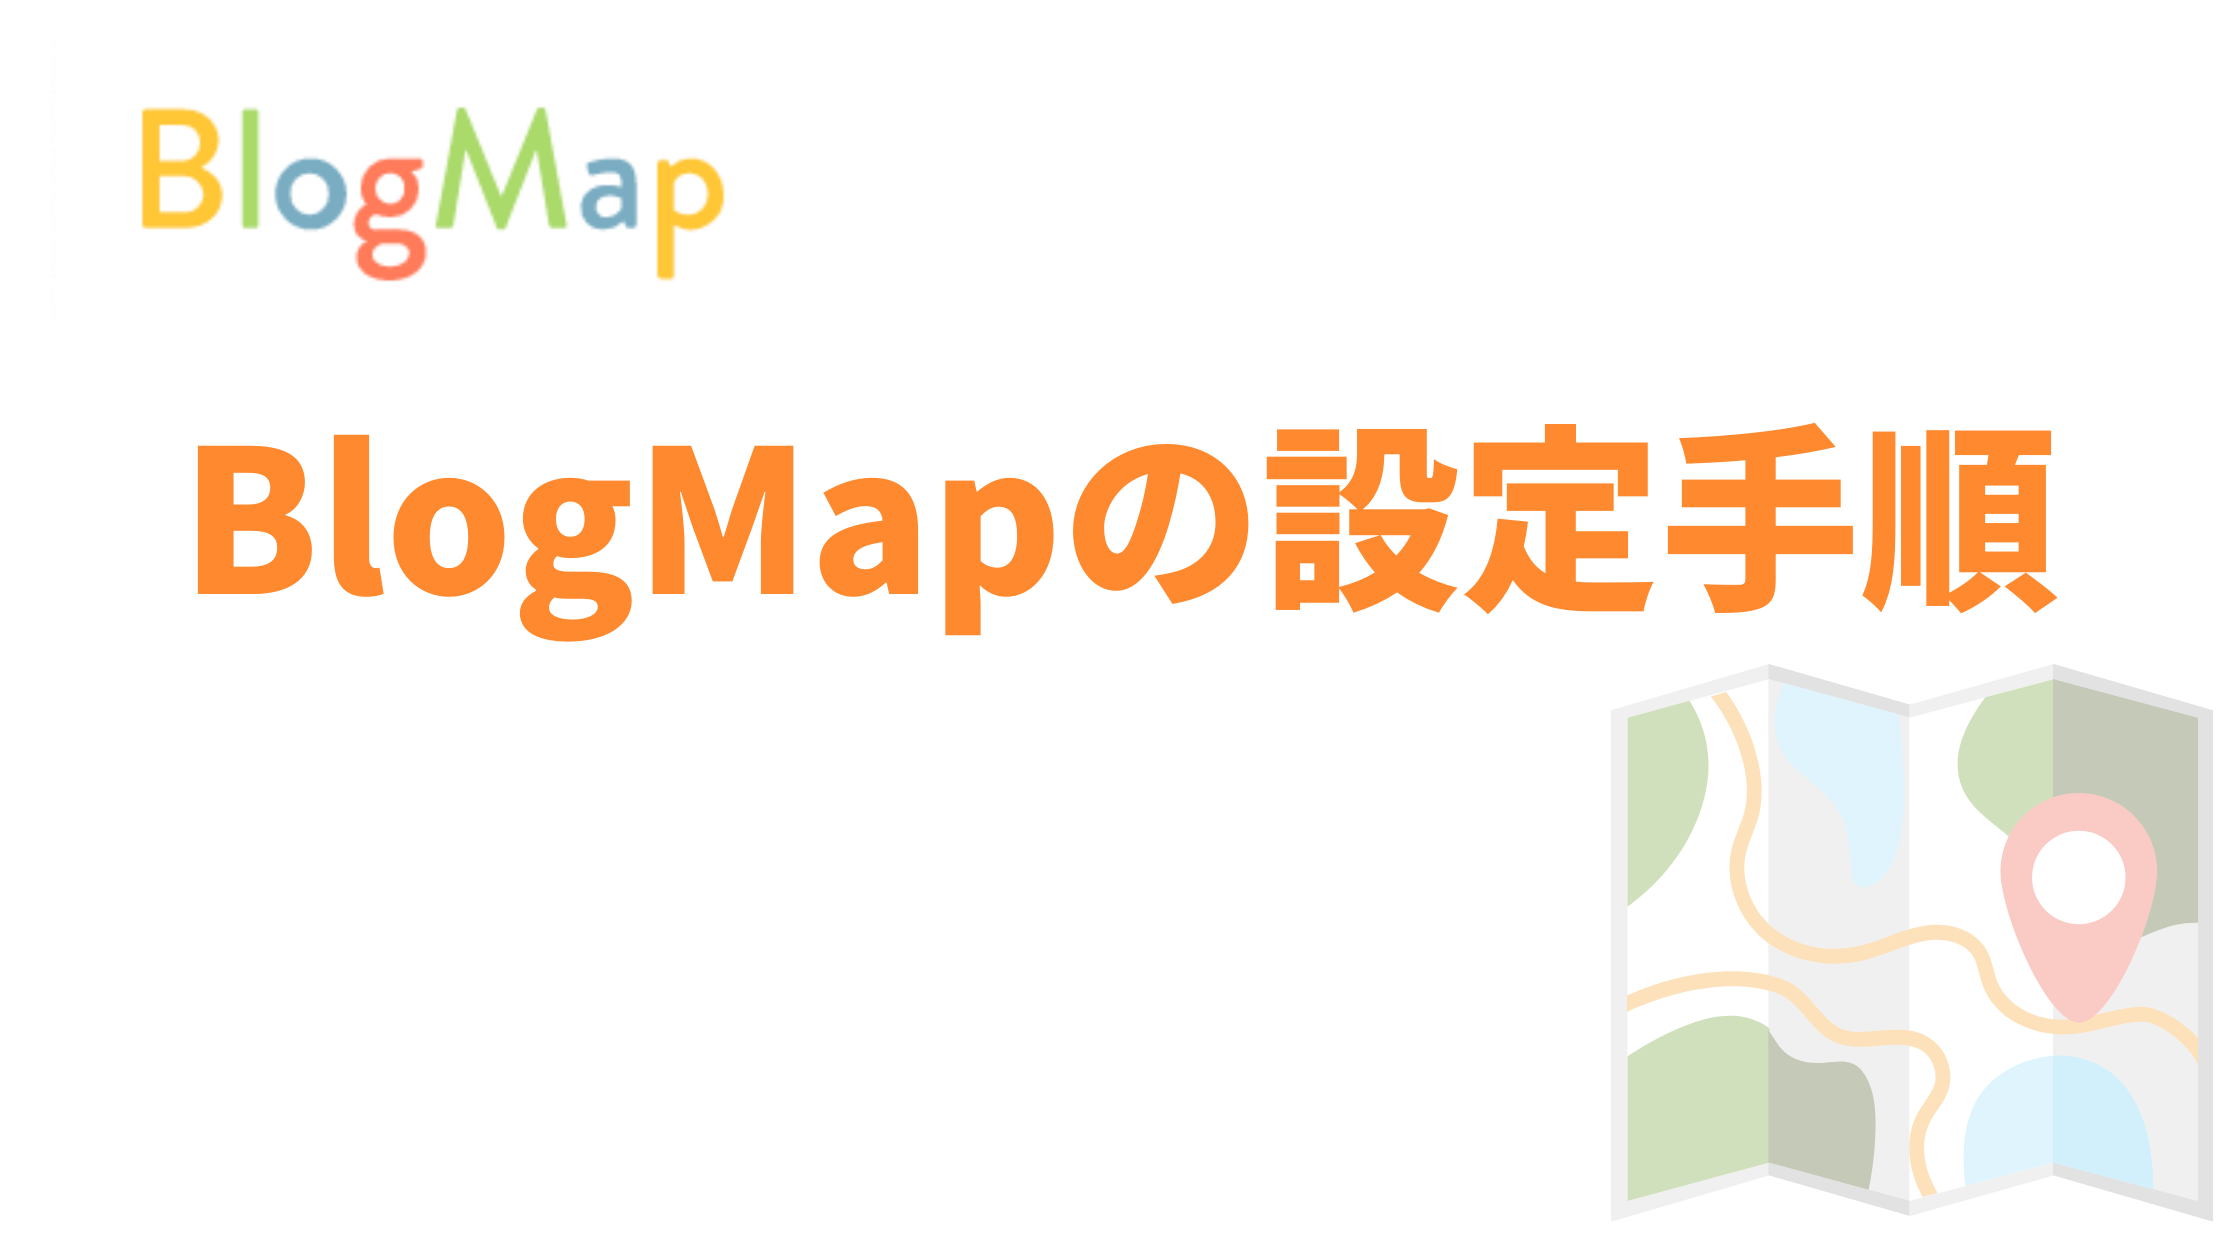 BlogMap(ブログマップ)３つの設定手順